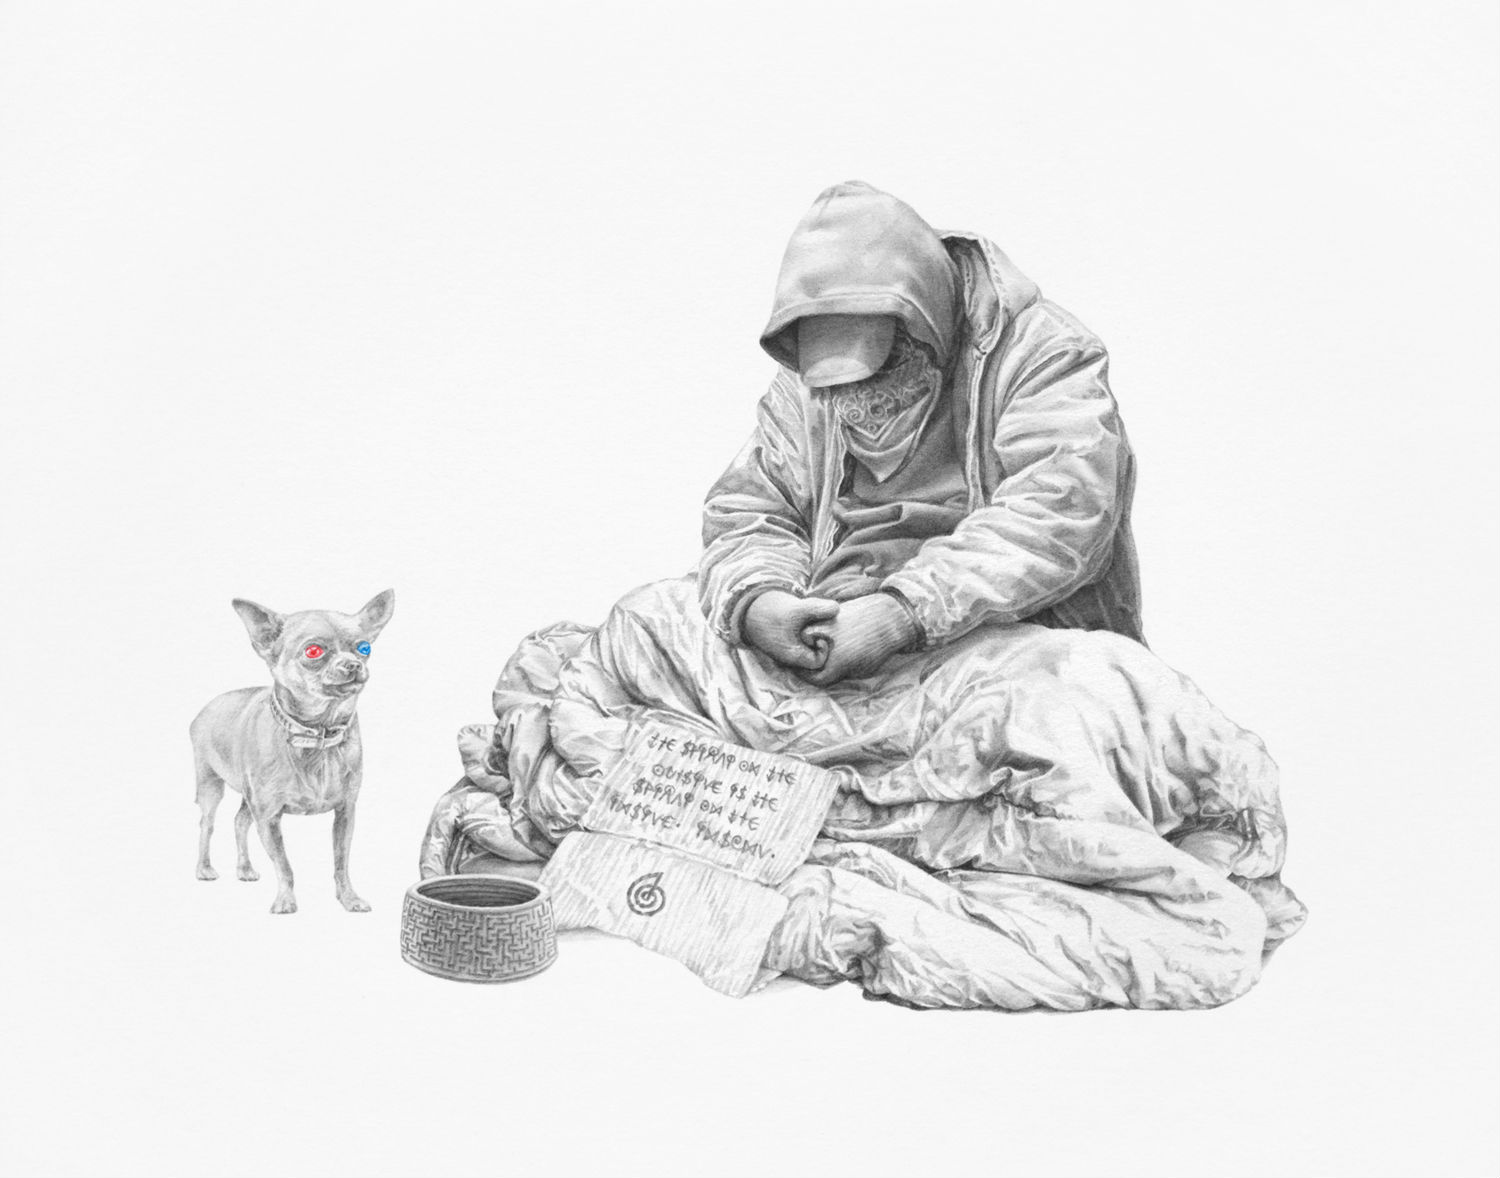 james roper illustration colour black white homeless man